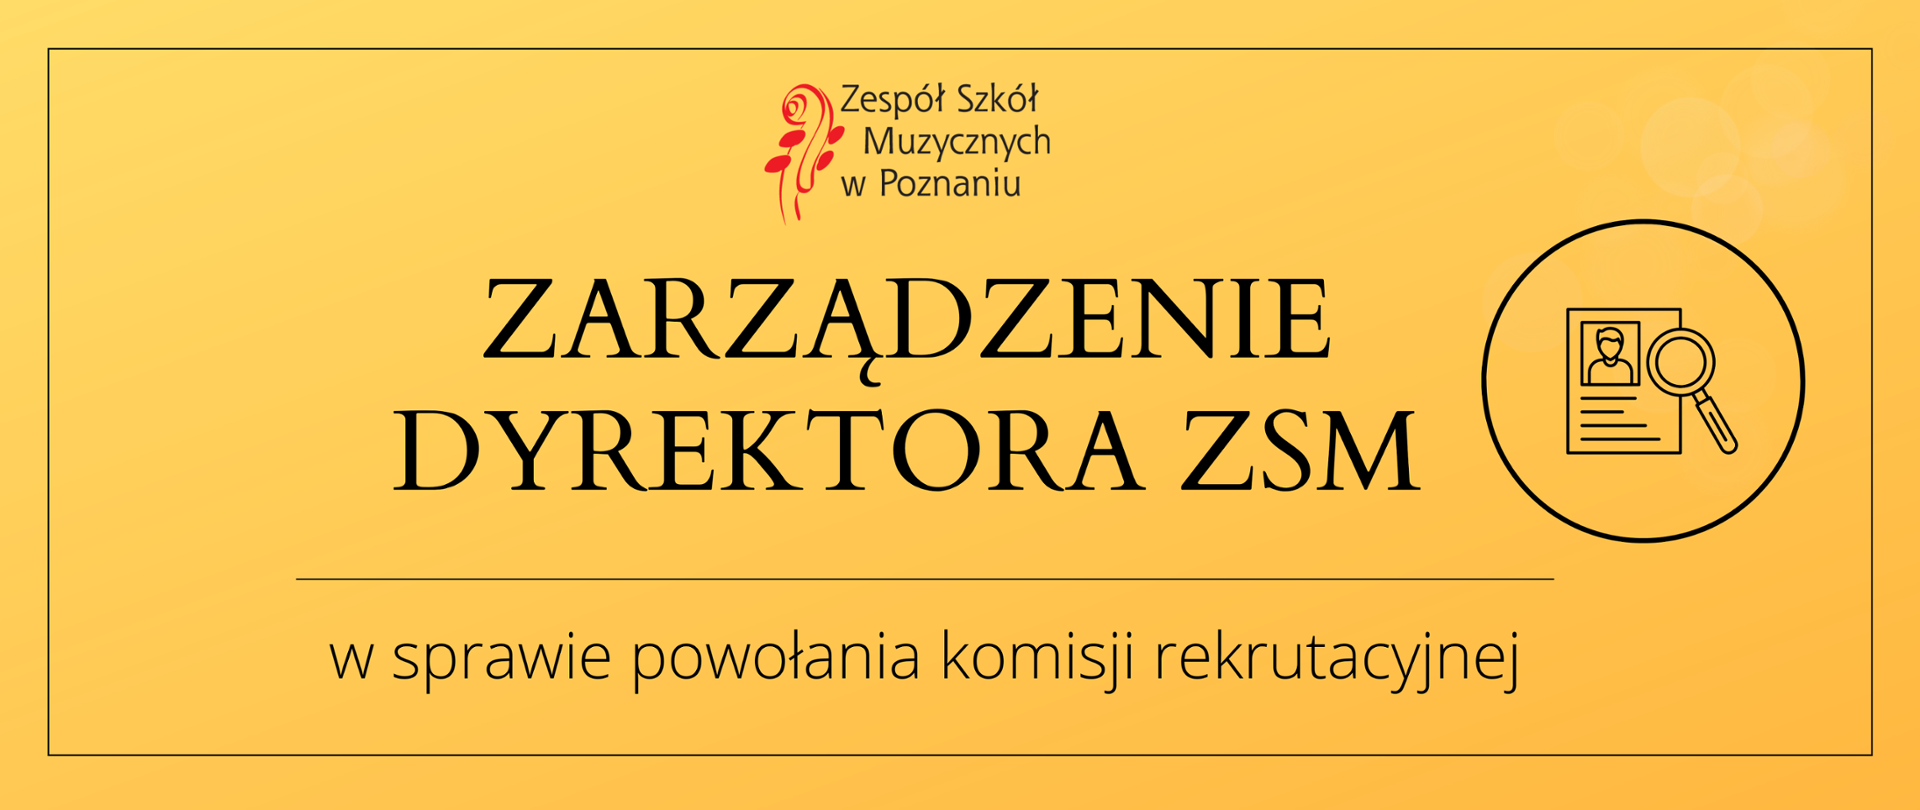 Żółty baner z logo ZSM oraz grafiką lupki i dokumentu. Treść: Zarządzenie Dyrektora ZSM w sprawie powołania komisji rekrutacyjnej